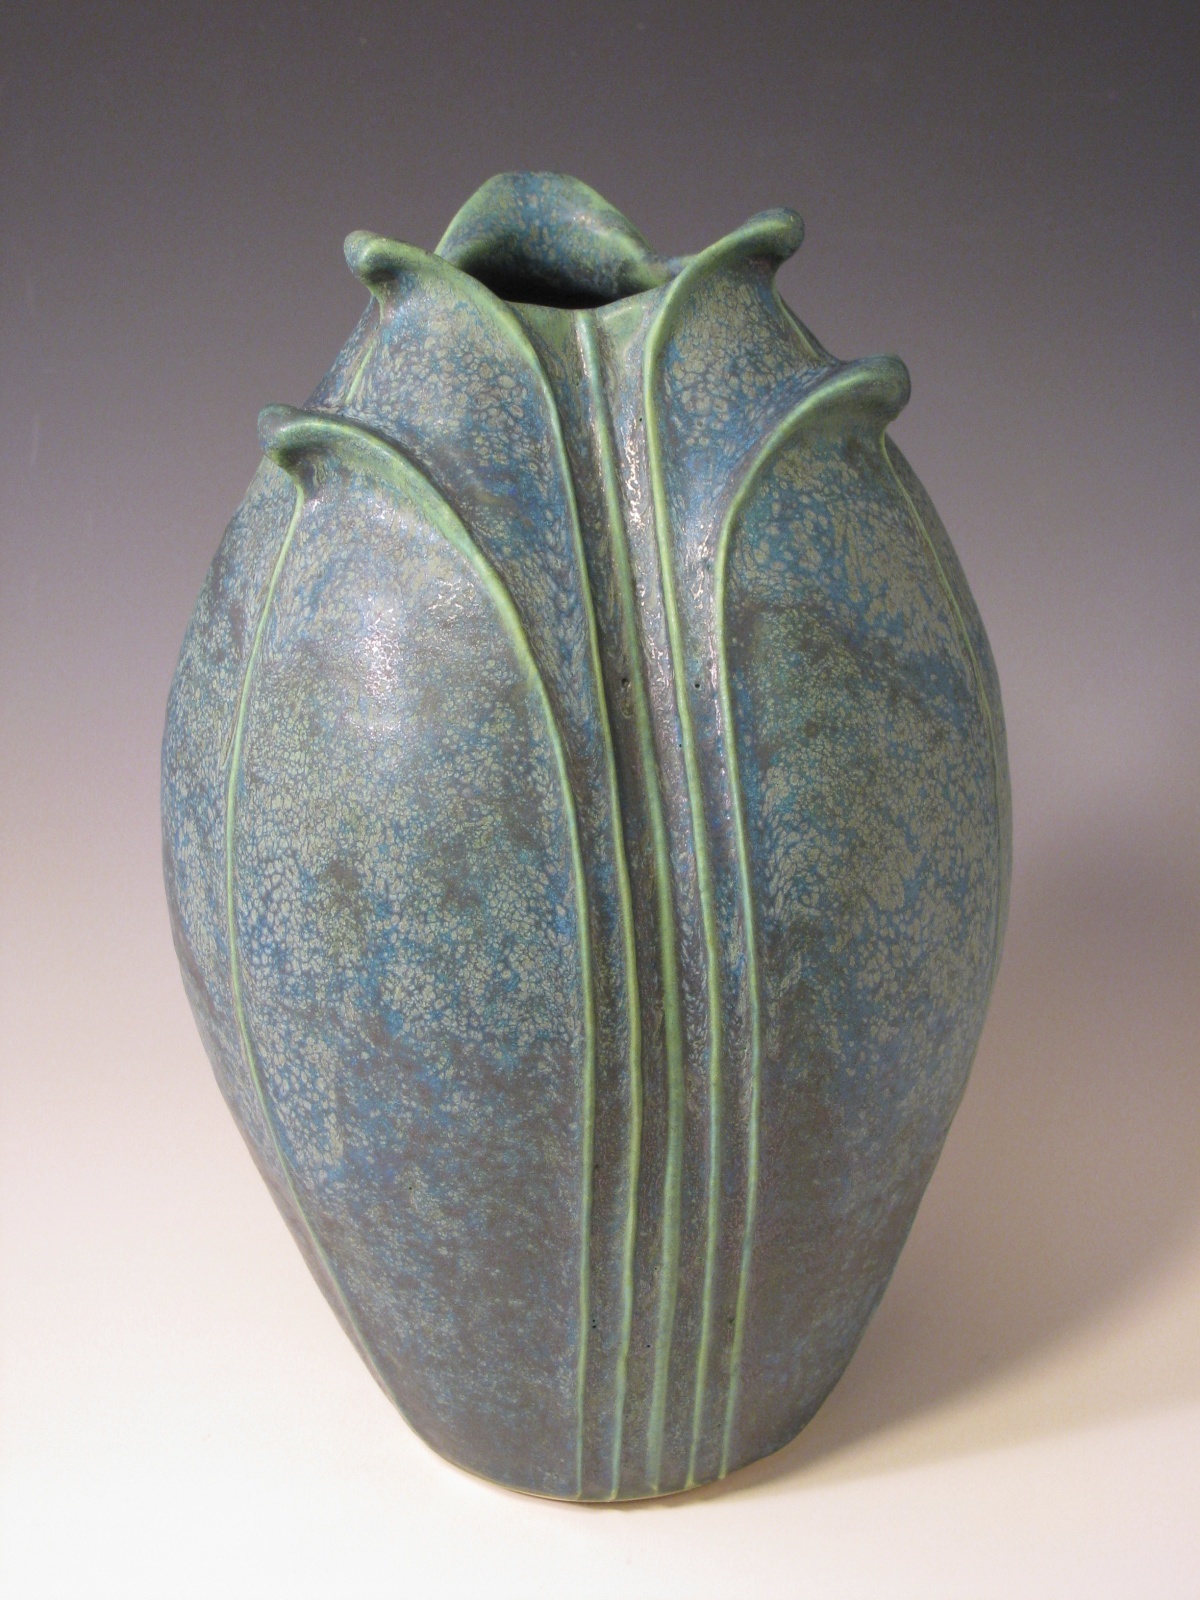 Jemerick Art Pottery Blog: March 2013